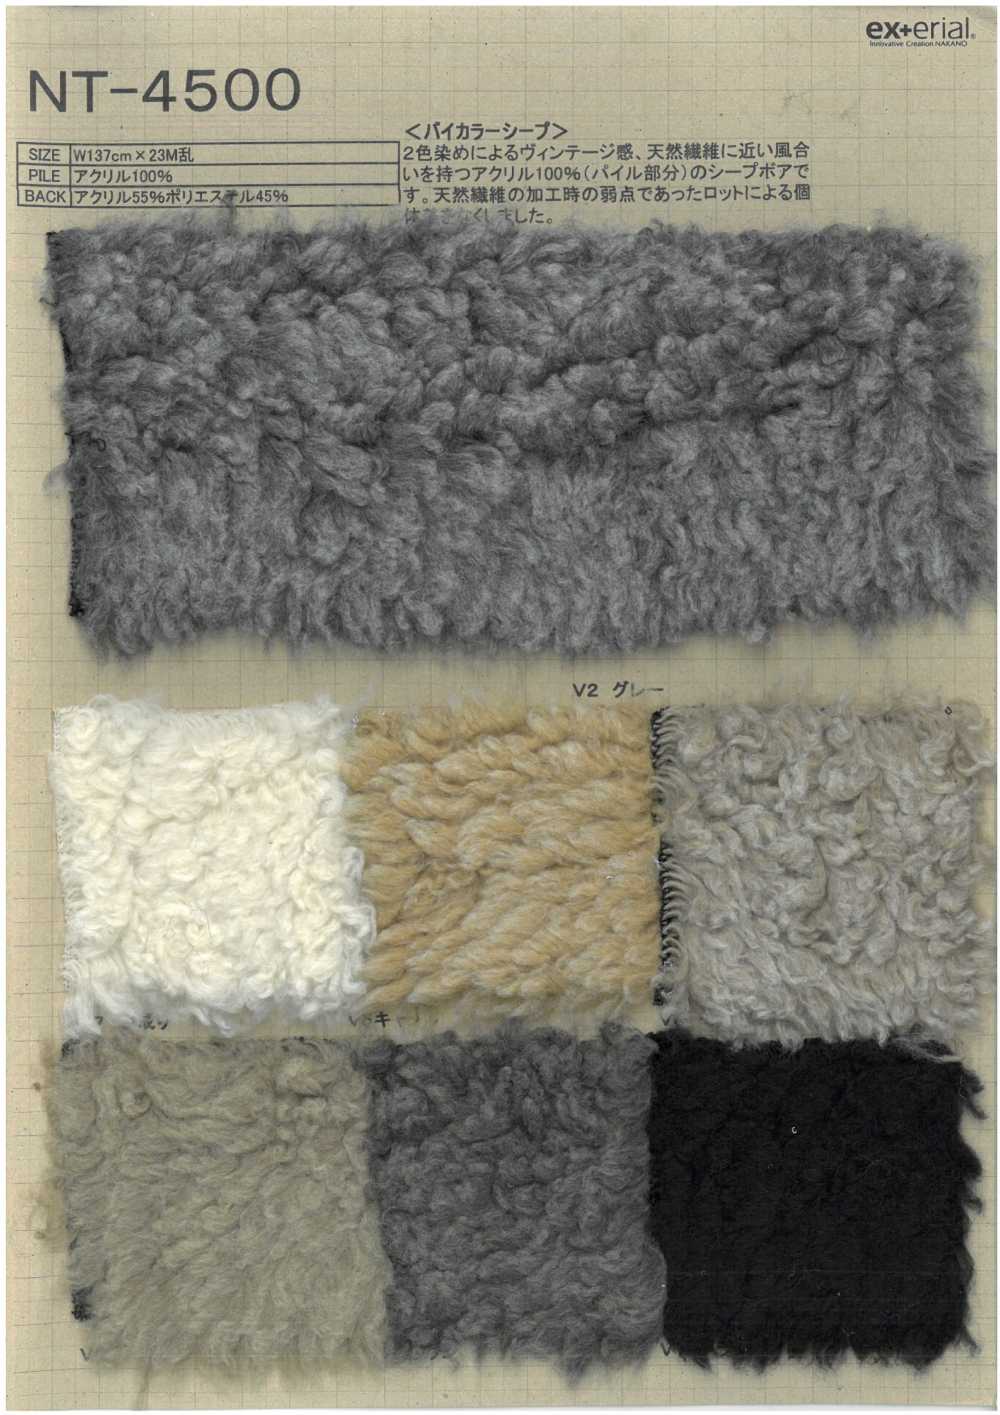 NT-4500 Pelliccia Artigianale [Pecora Bicolore][Tessile / Tessuto] Industria Delle Magliette A Nakano